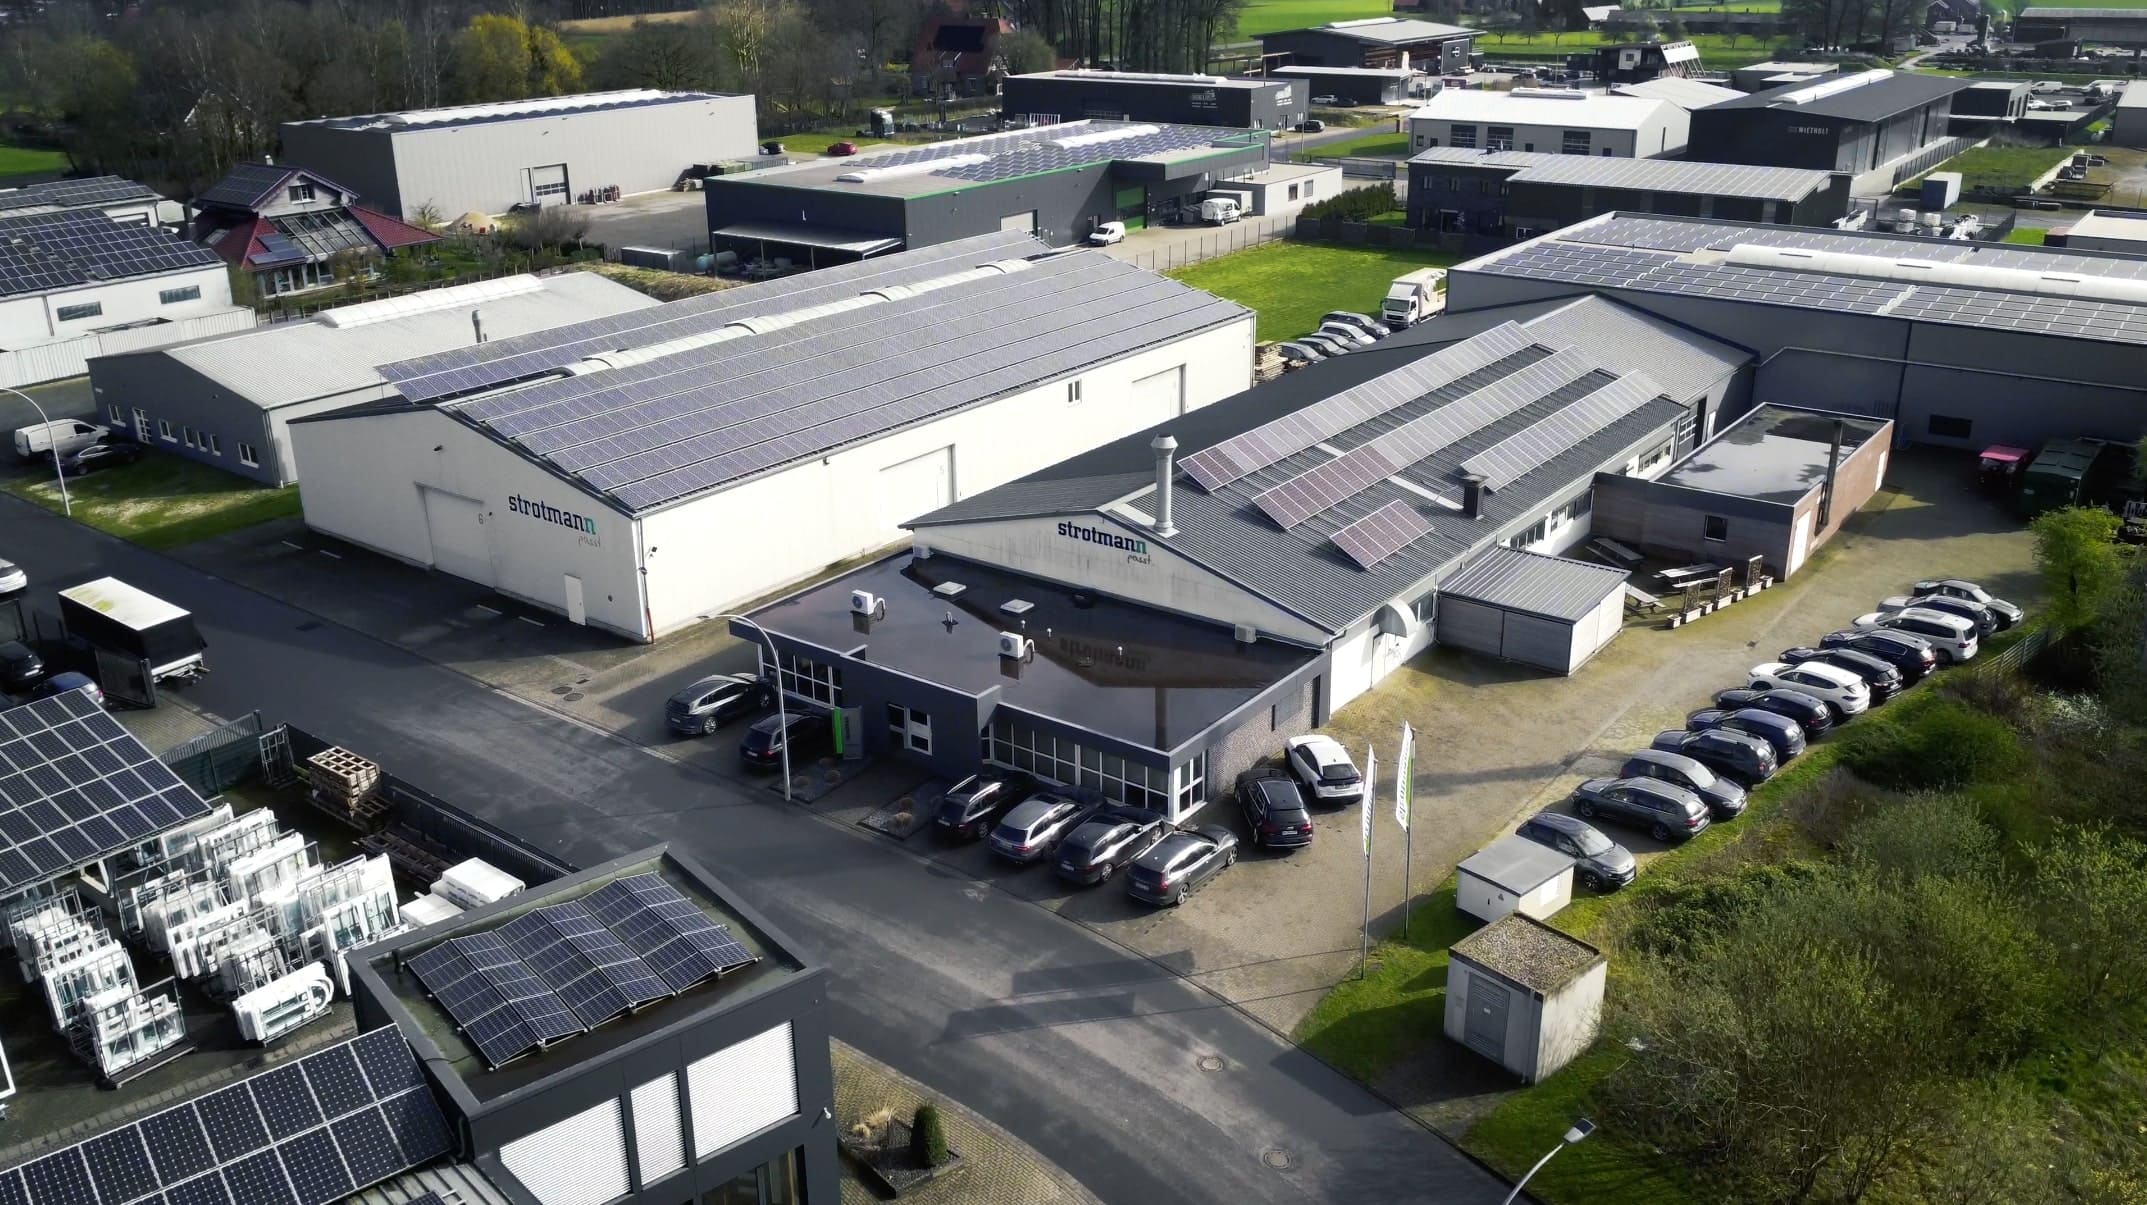 Überblick der Firma Strotmann und deren Produktionshallen mit einer Drohne.